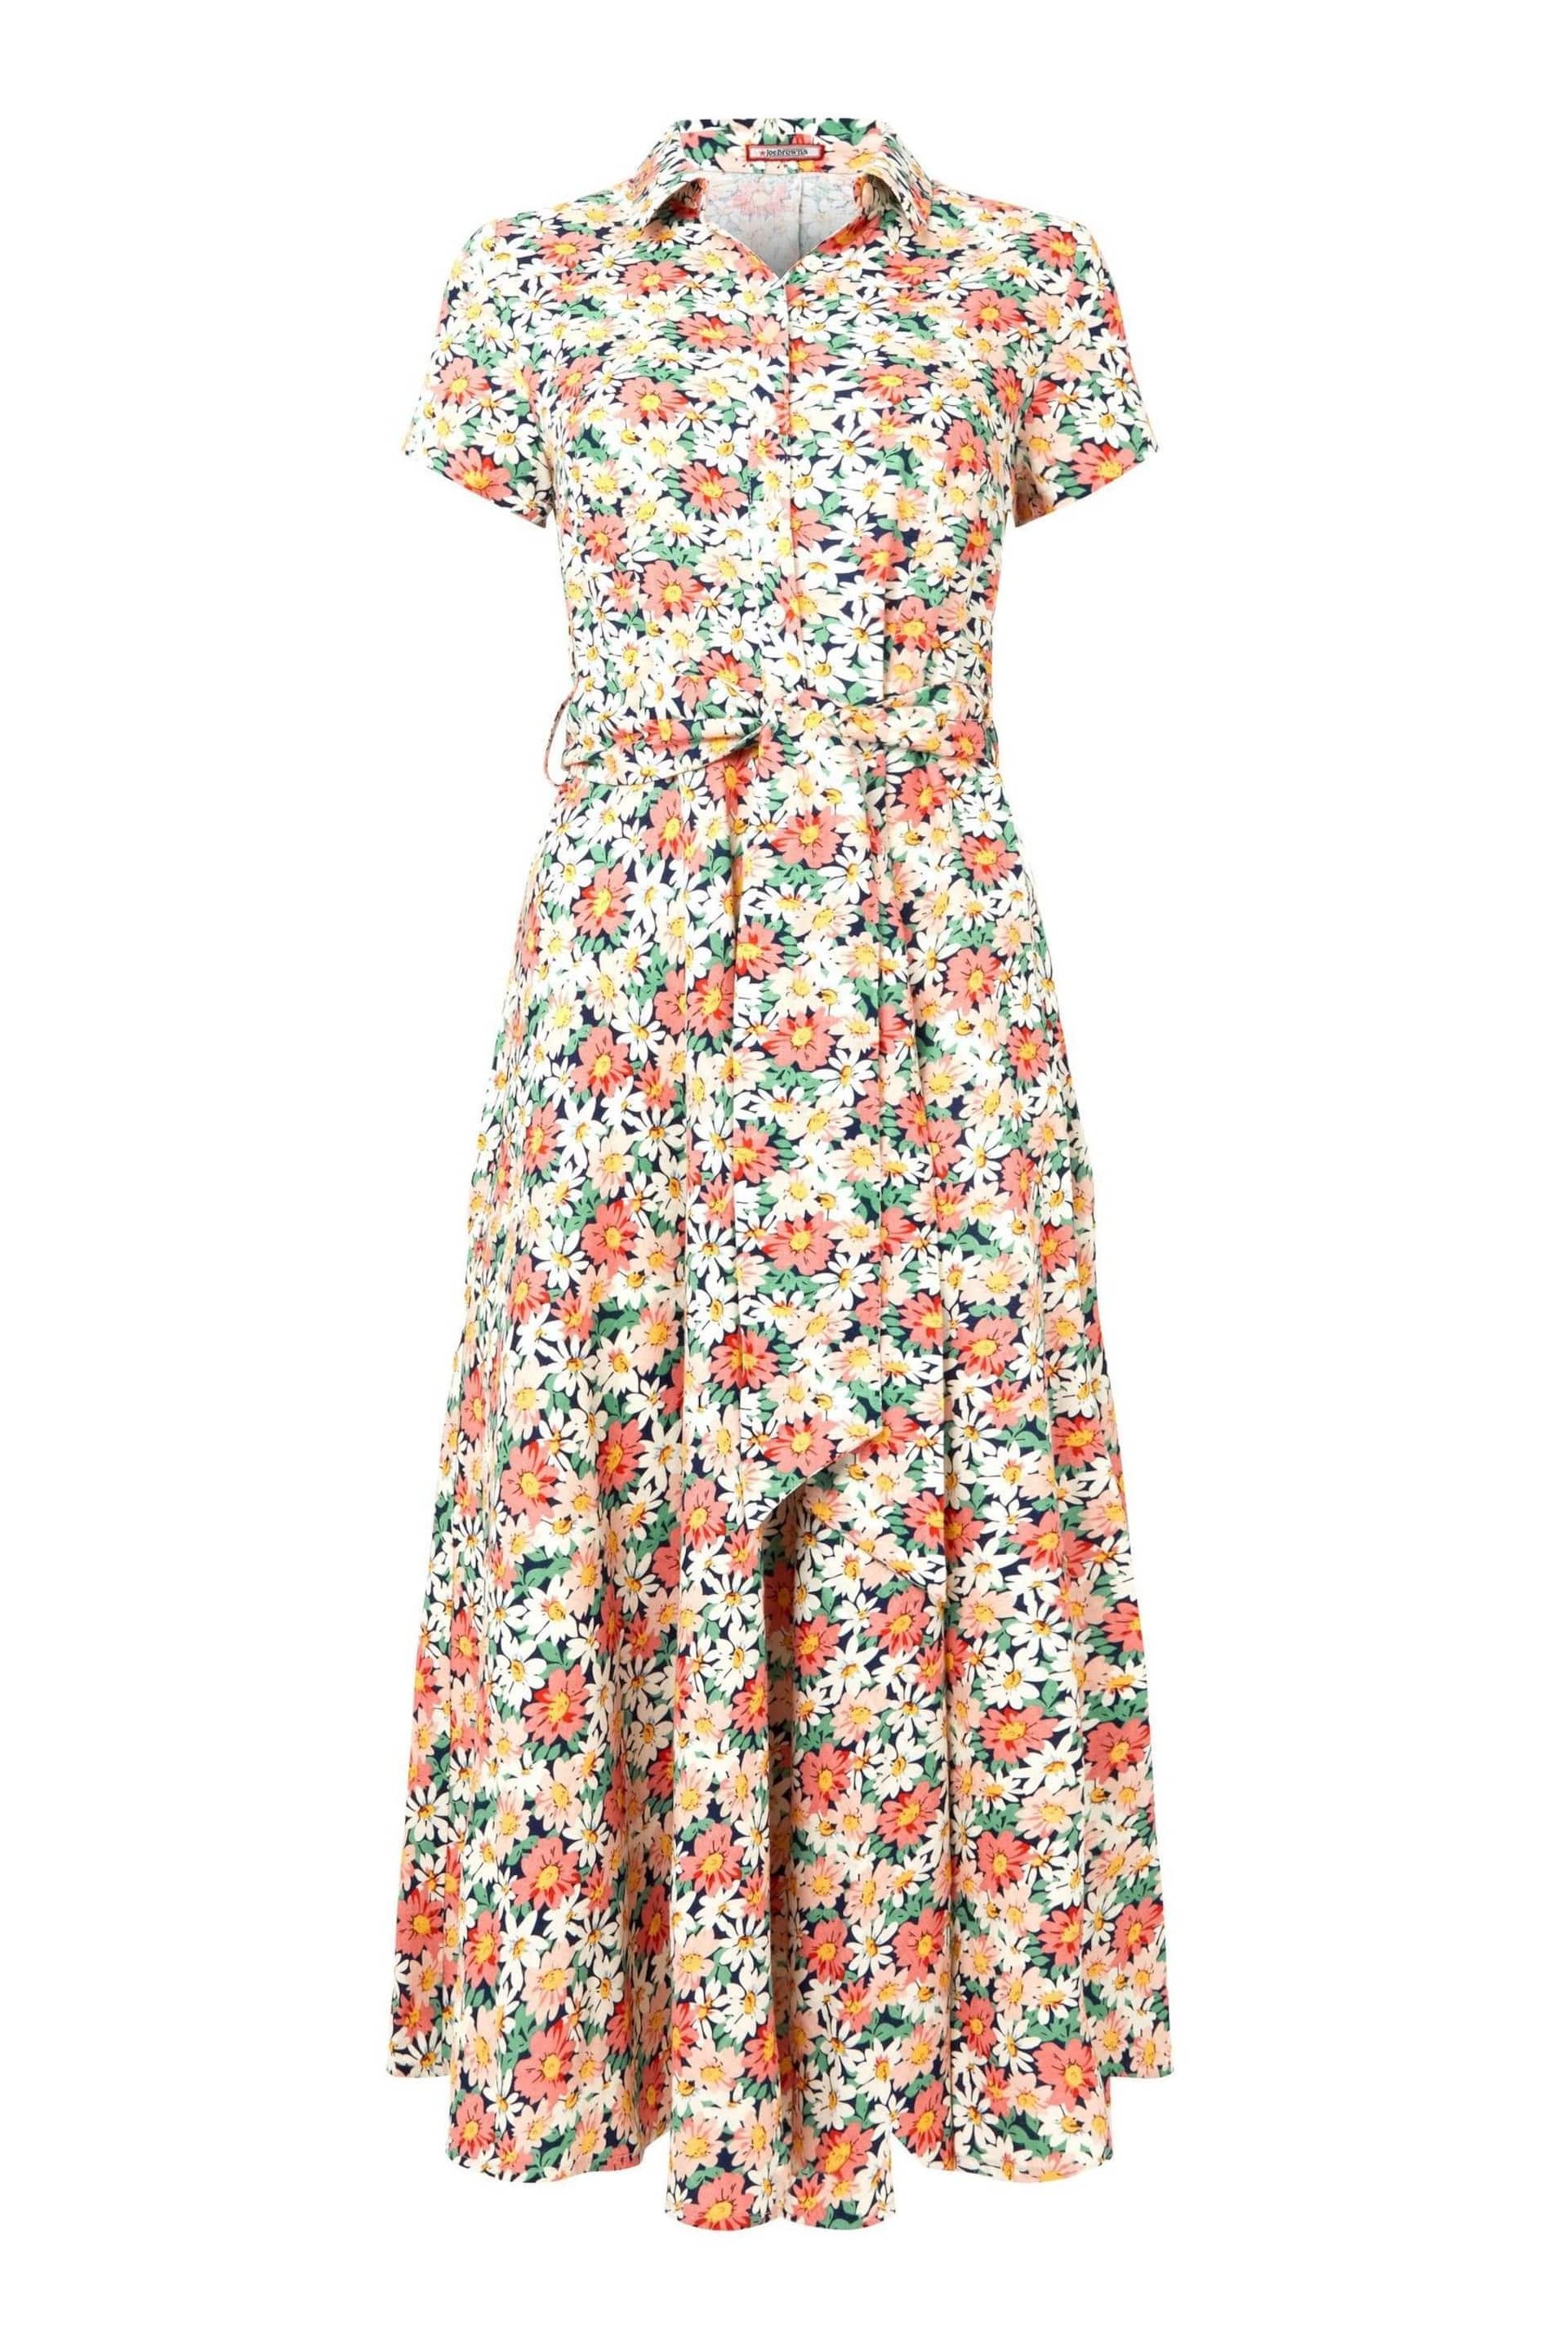 Joe Browns Cream Floral Print Short Sleeve Linen Blend Shirt Dress - Image 5 of 5